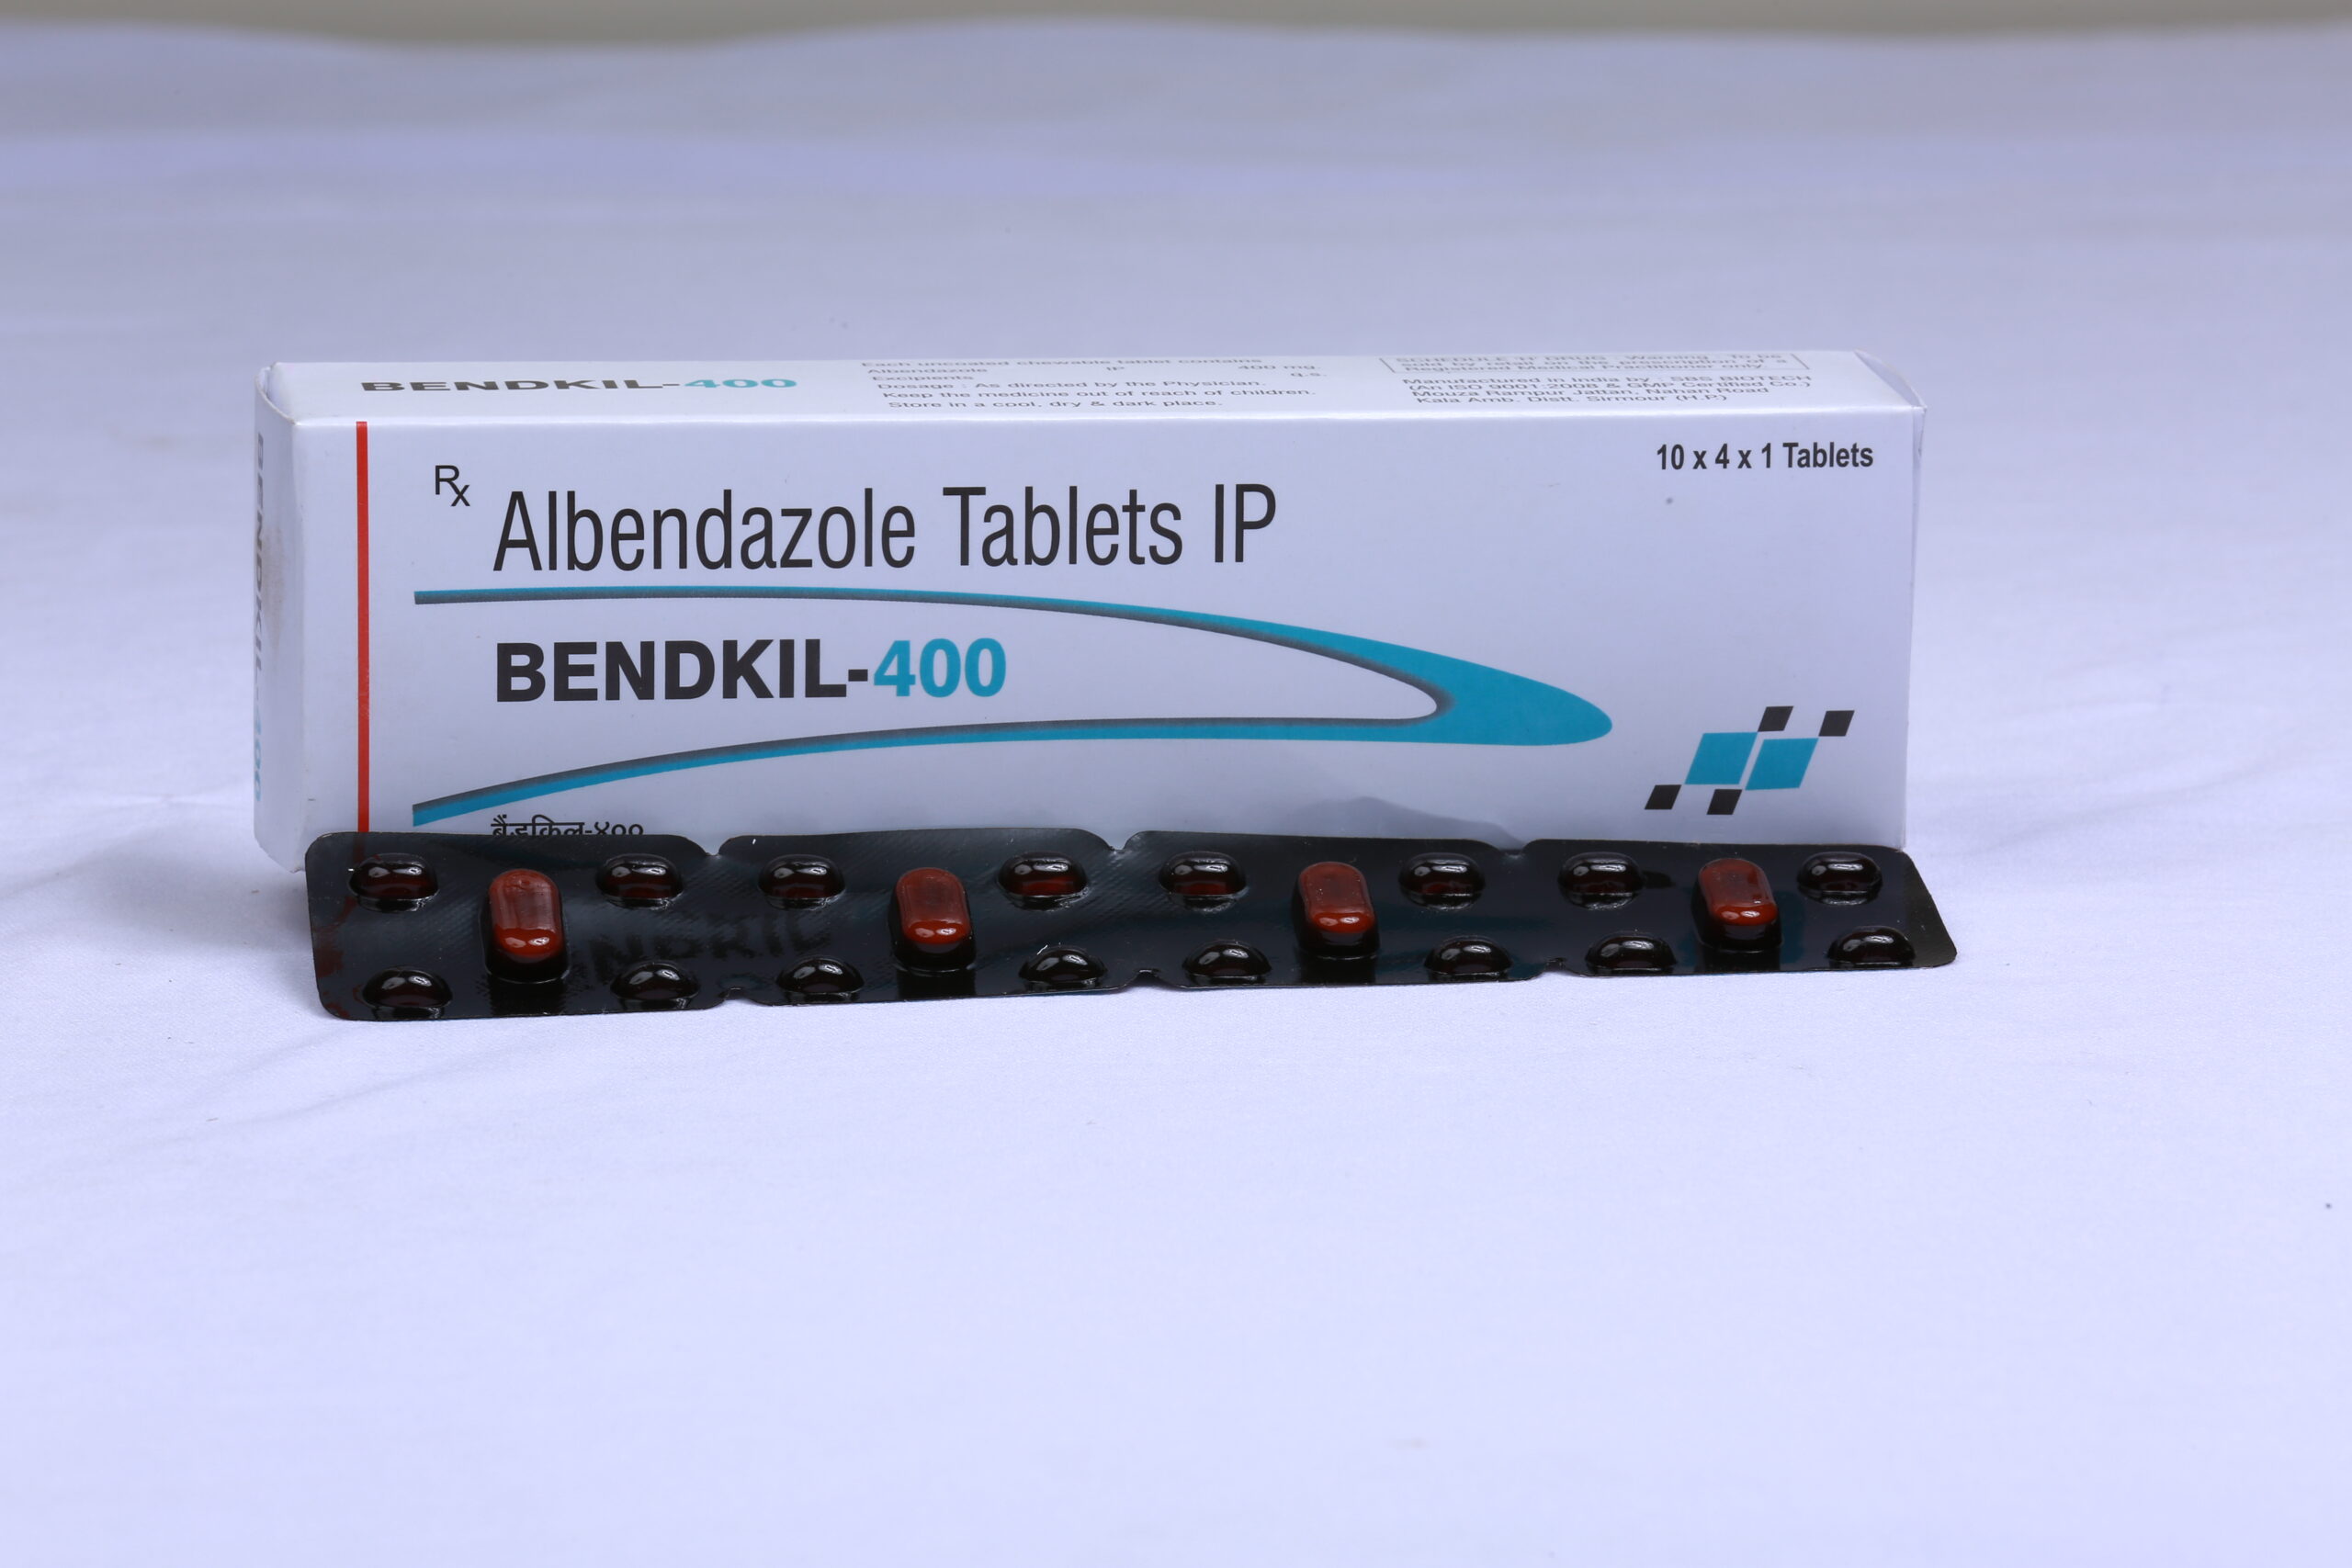 BENDKIL-400 (Albendazole 400mg)